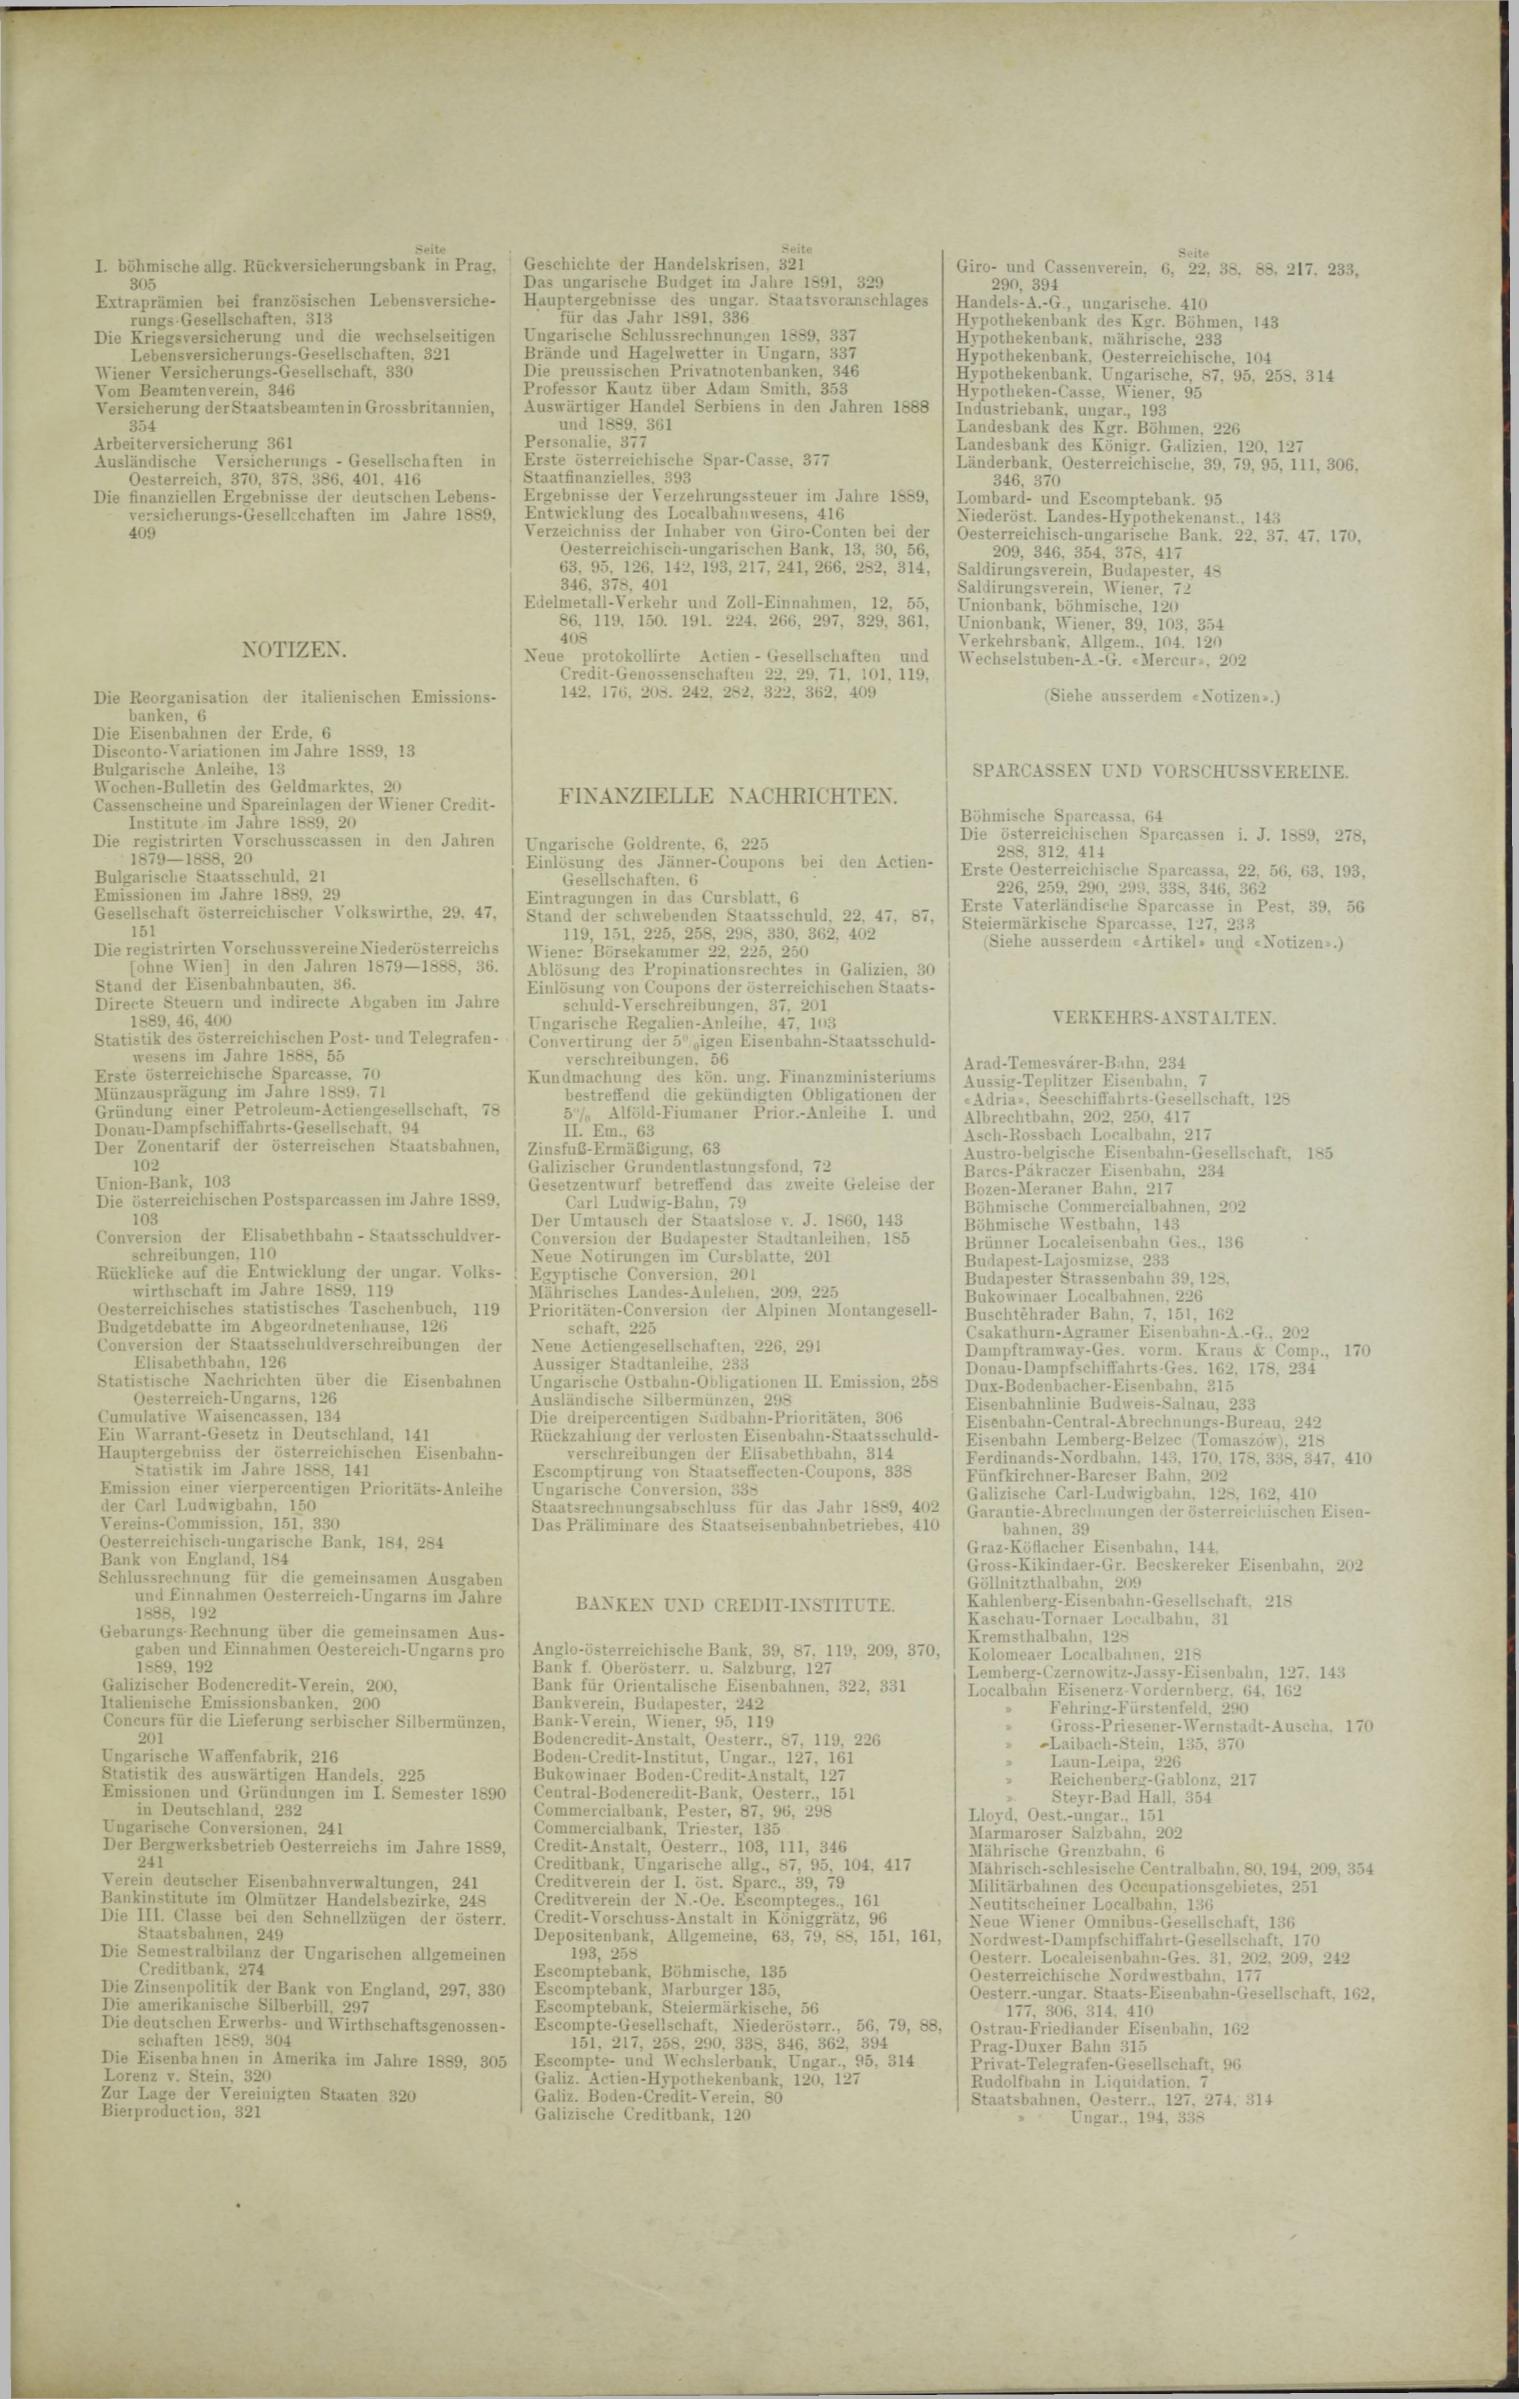 Der Tresor 21.08.1890 - Seite 11